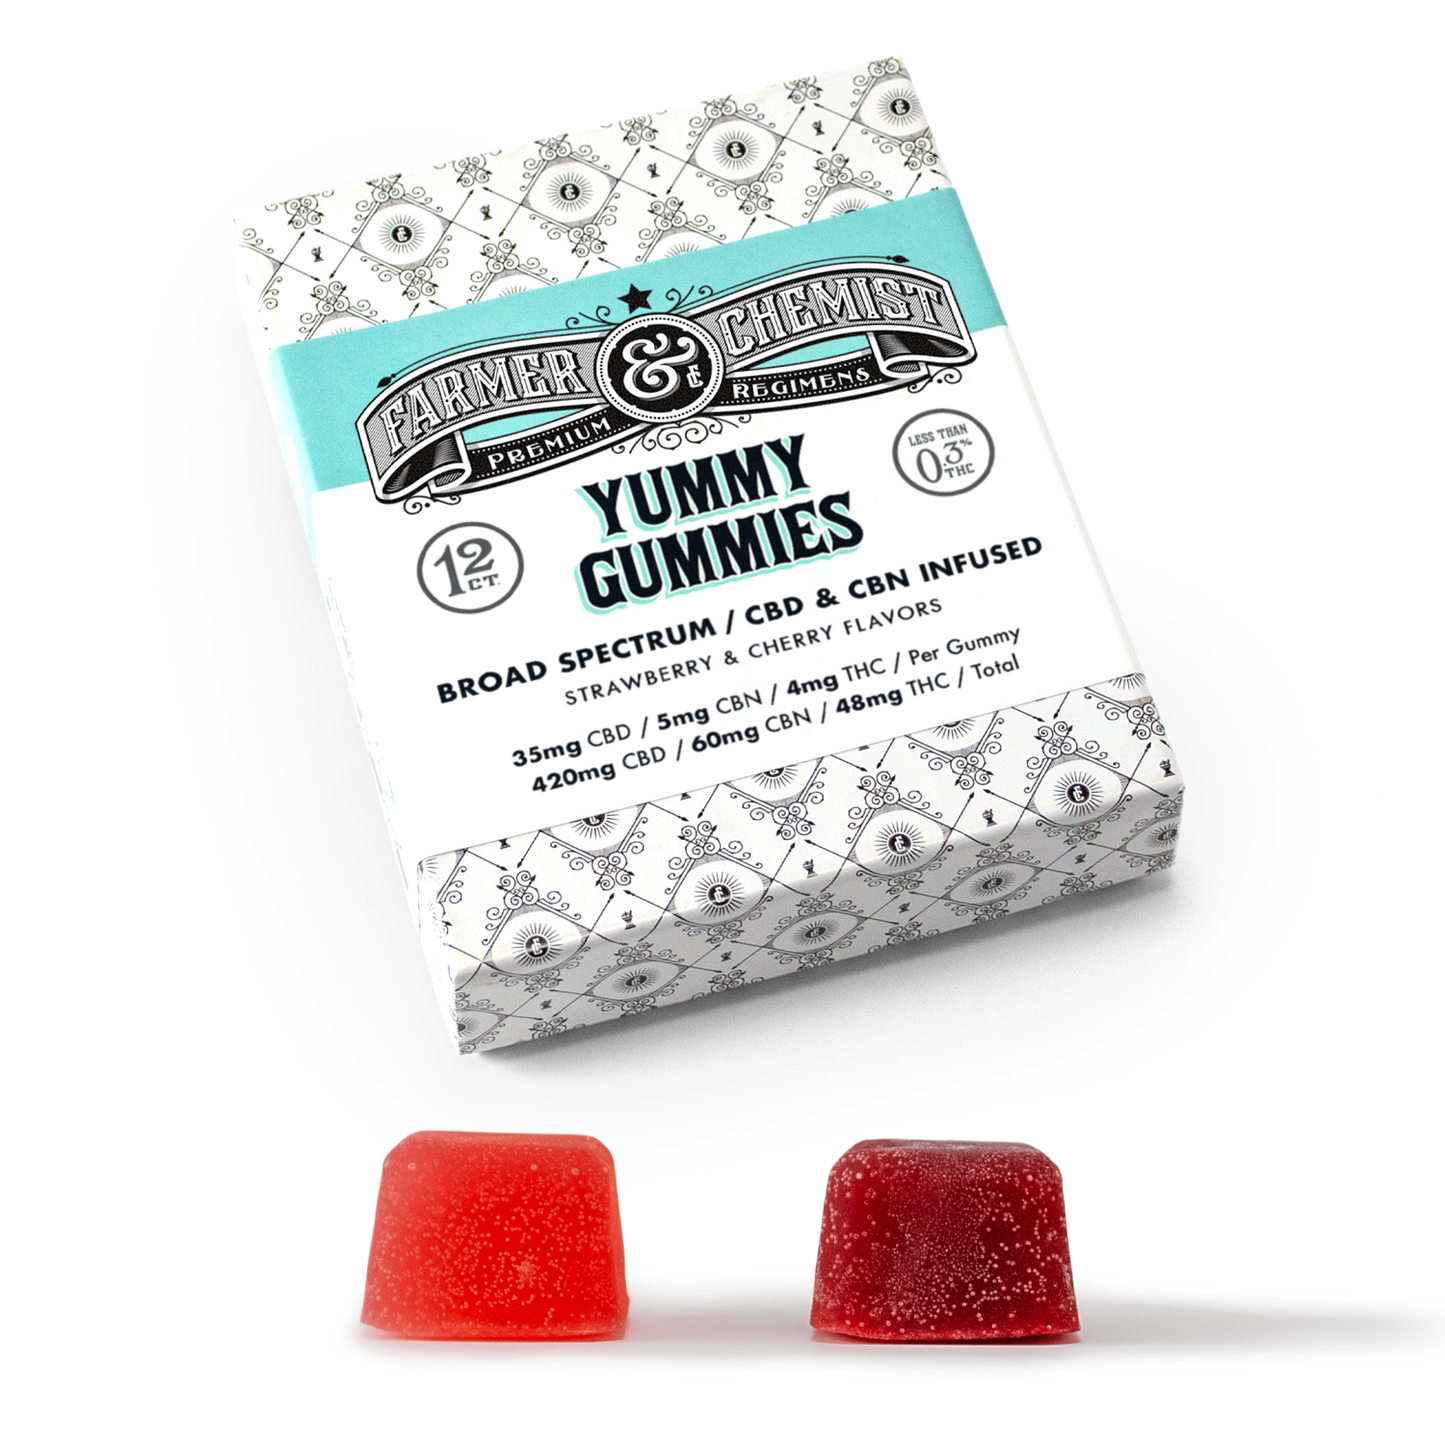 YUMMY GUMMIES - 12ct 35mg CBD/5mg CBN/4mg THC Gummies